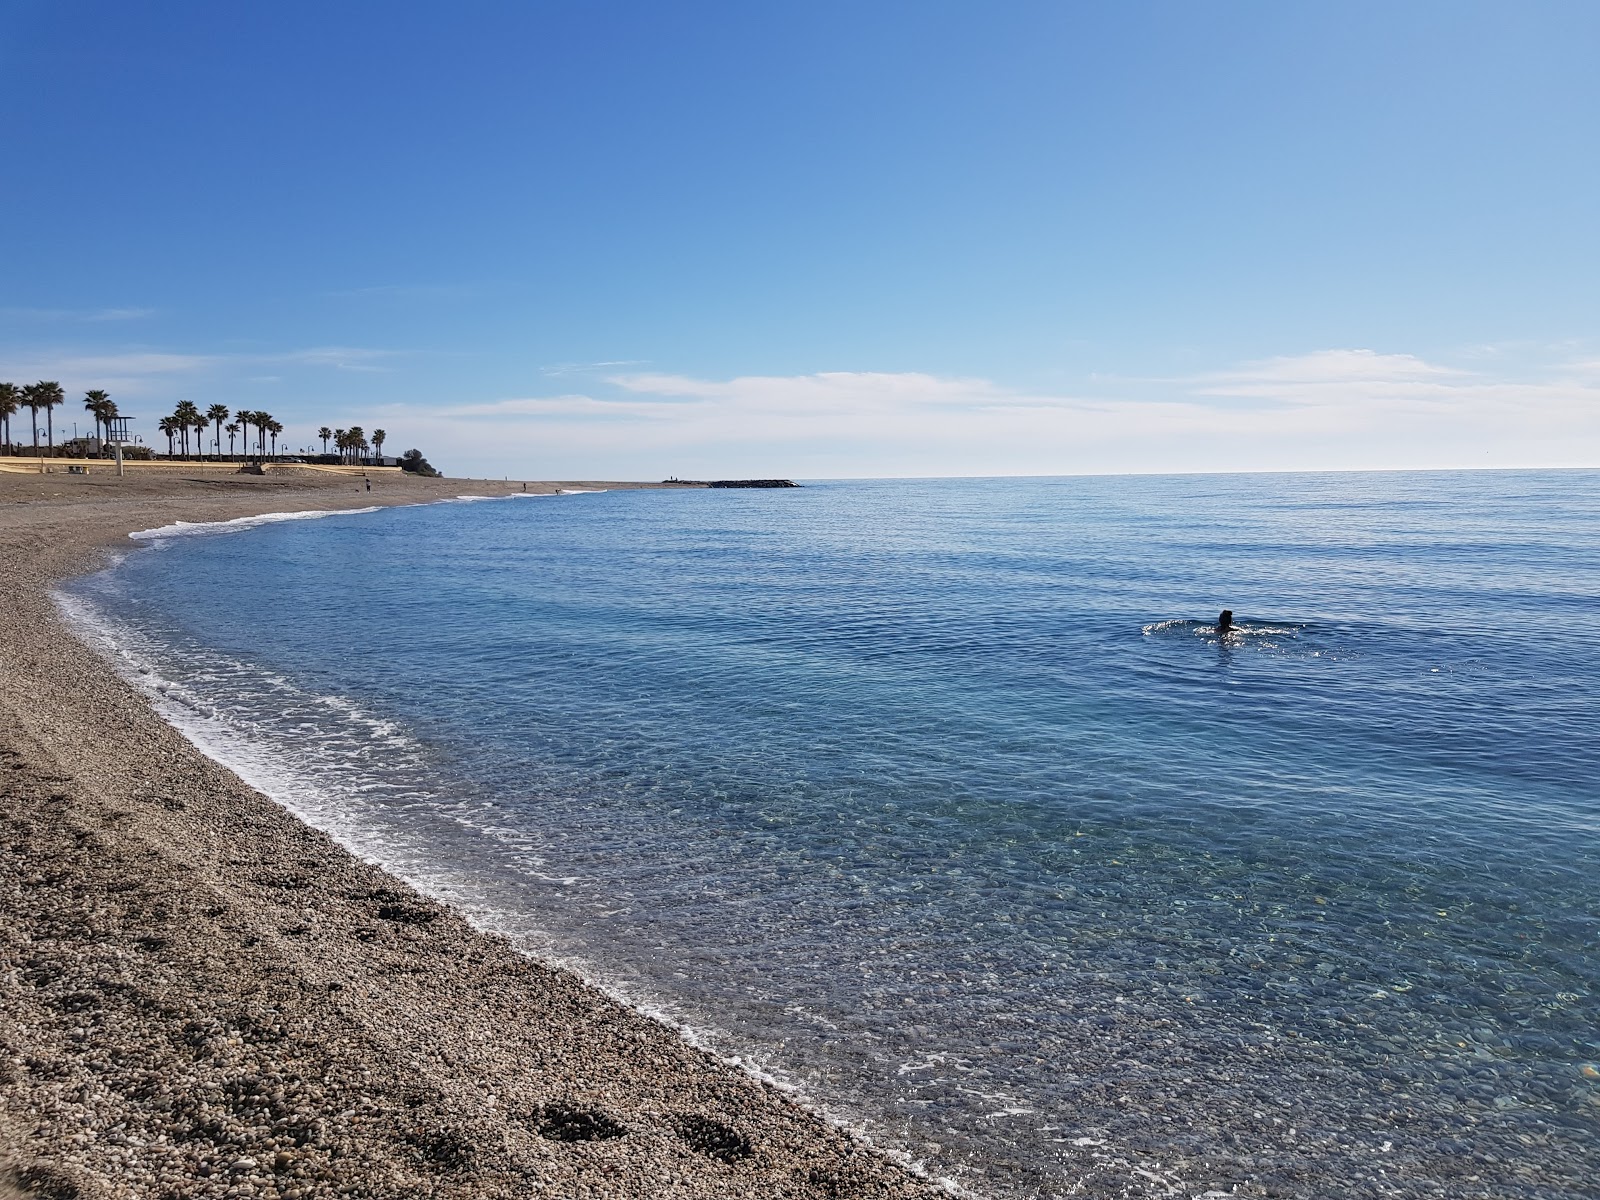 Foto af Playa de San Nicolas - populært sted blandt afslapningskendere